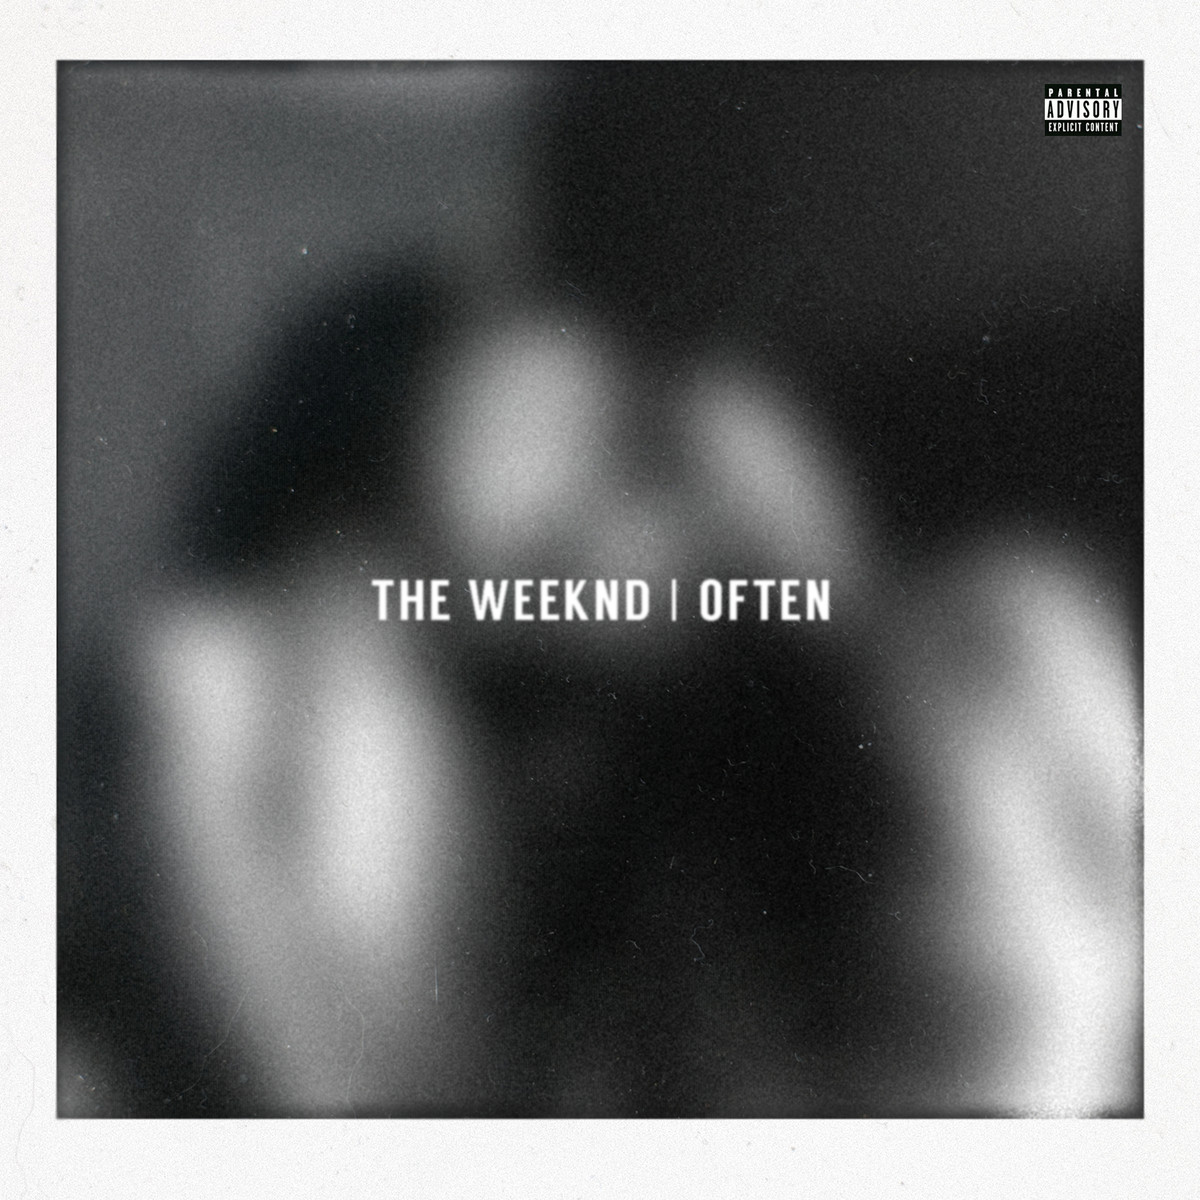 Often(The Weeknd歌曲)